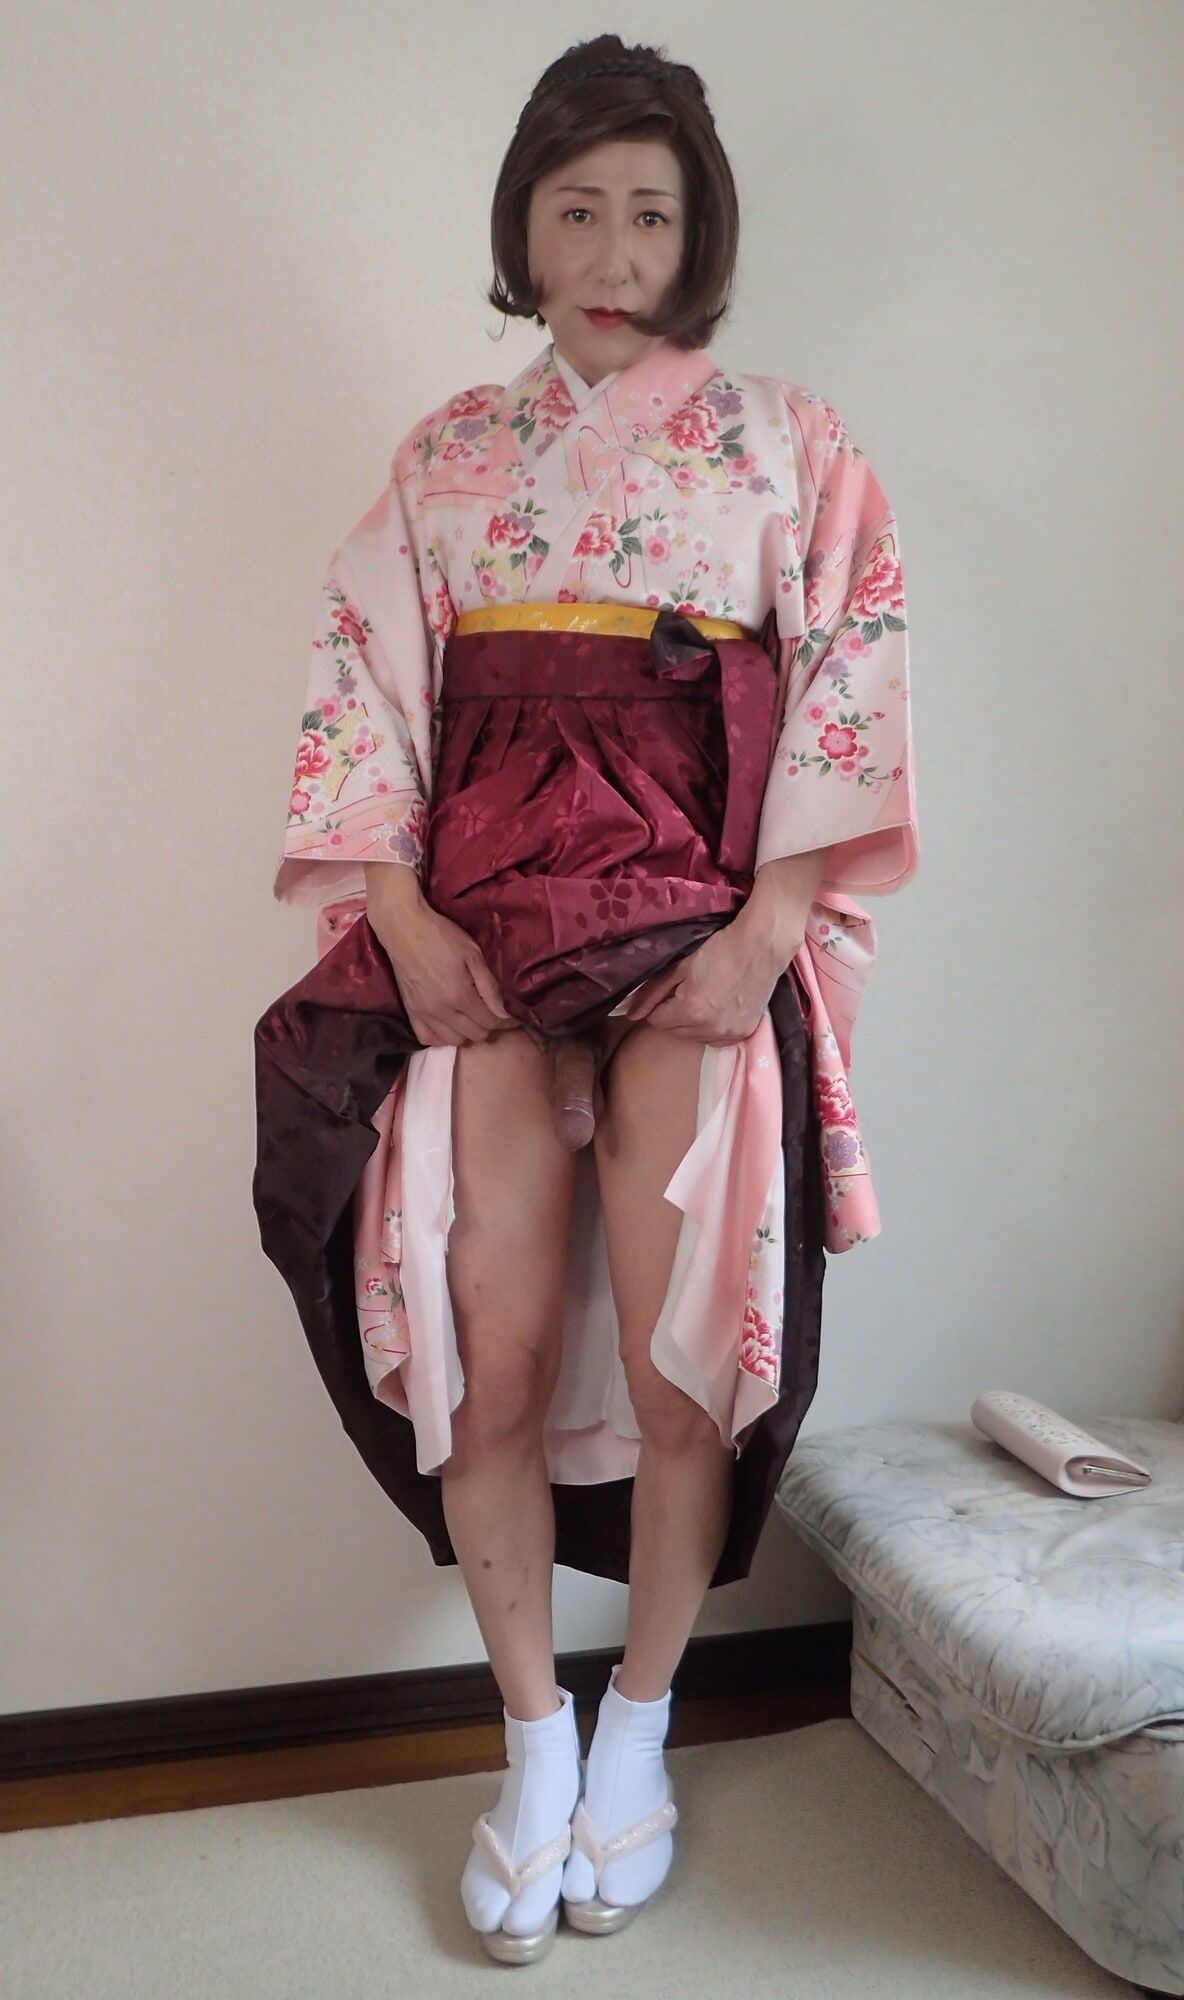 I never wear shorts under my kimono